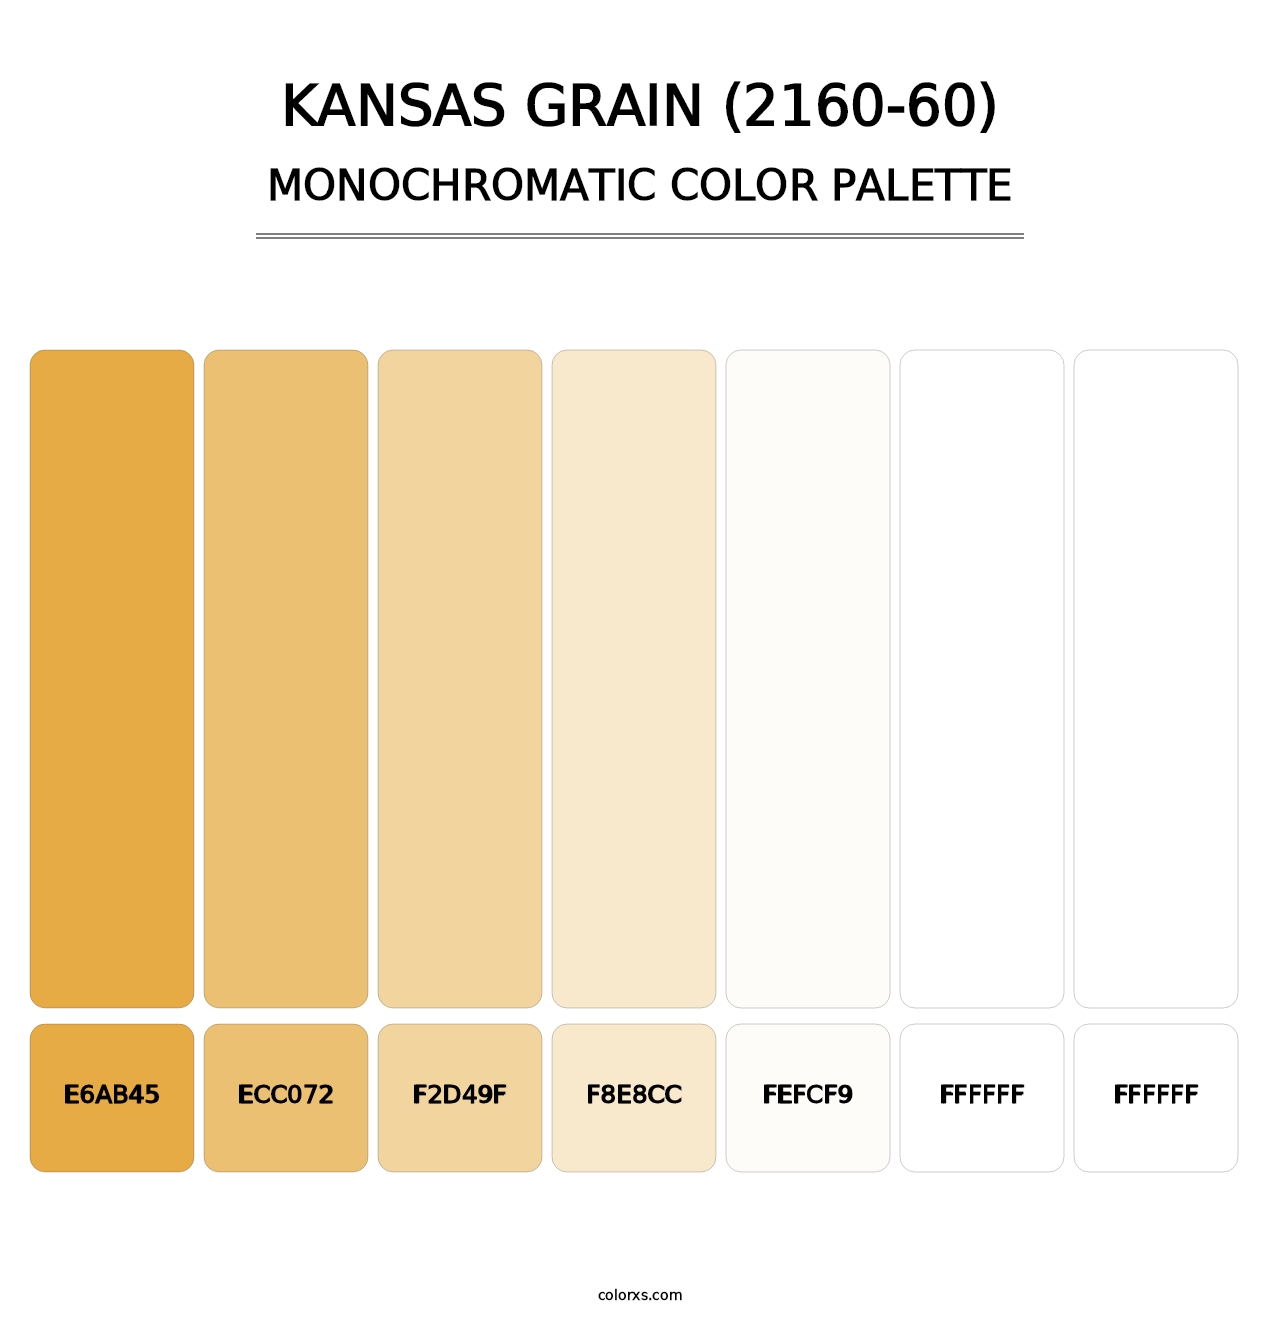 Kansas Grain (2160-60) - Monochromatic Color Palette